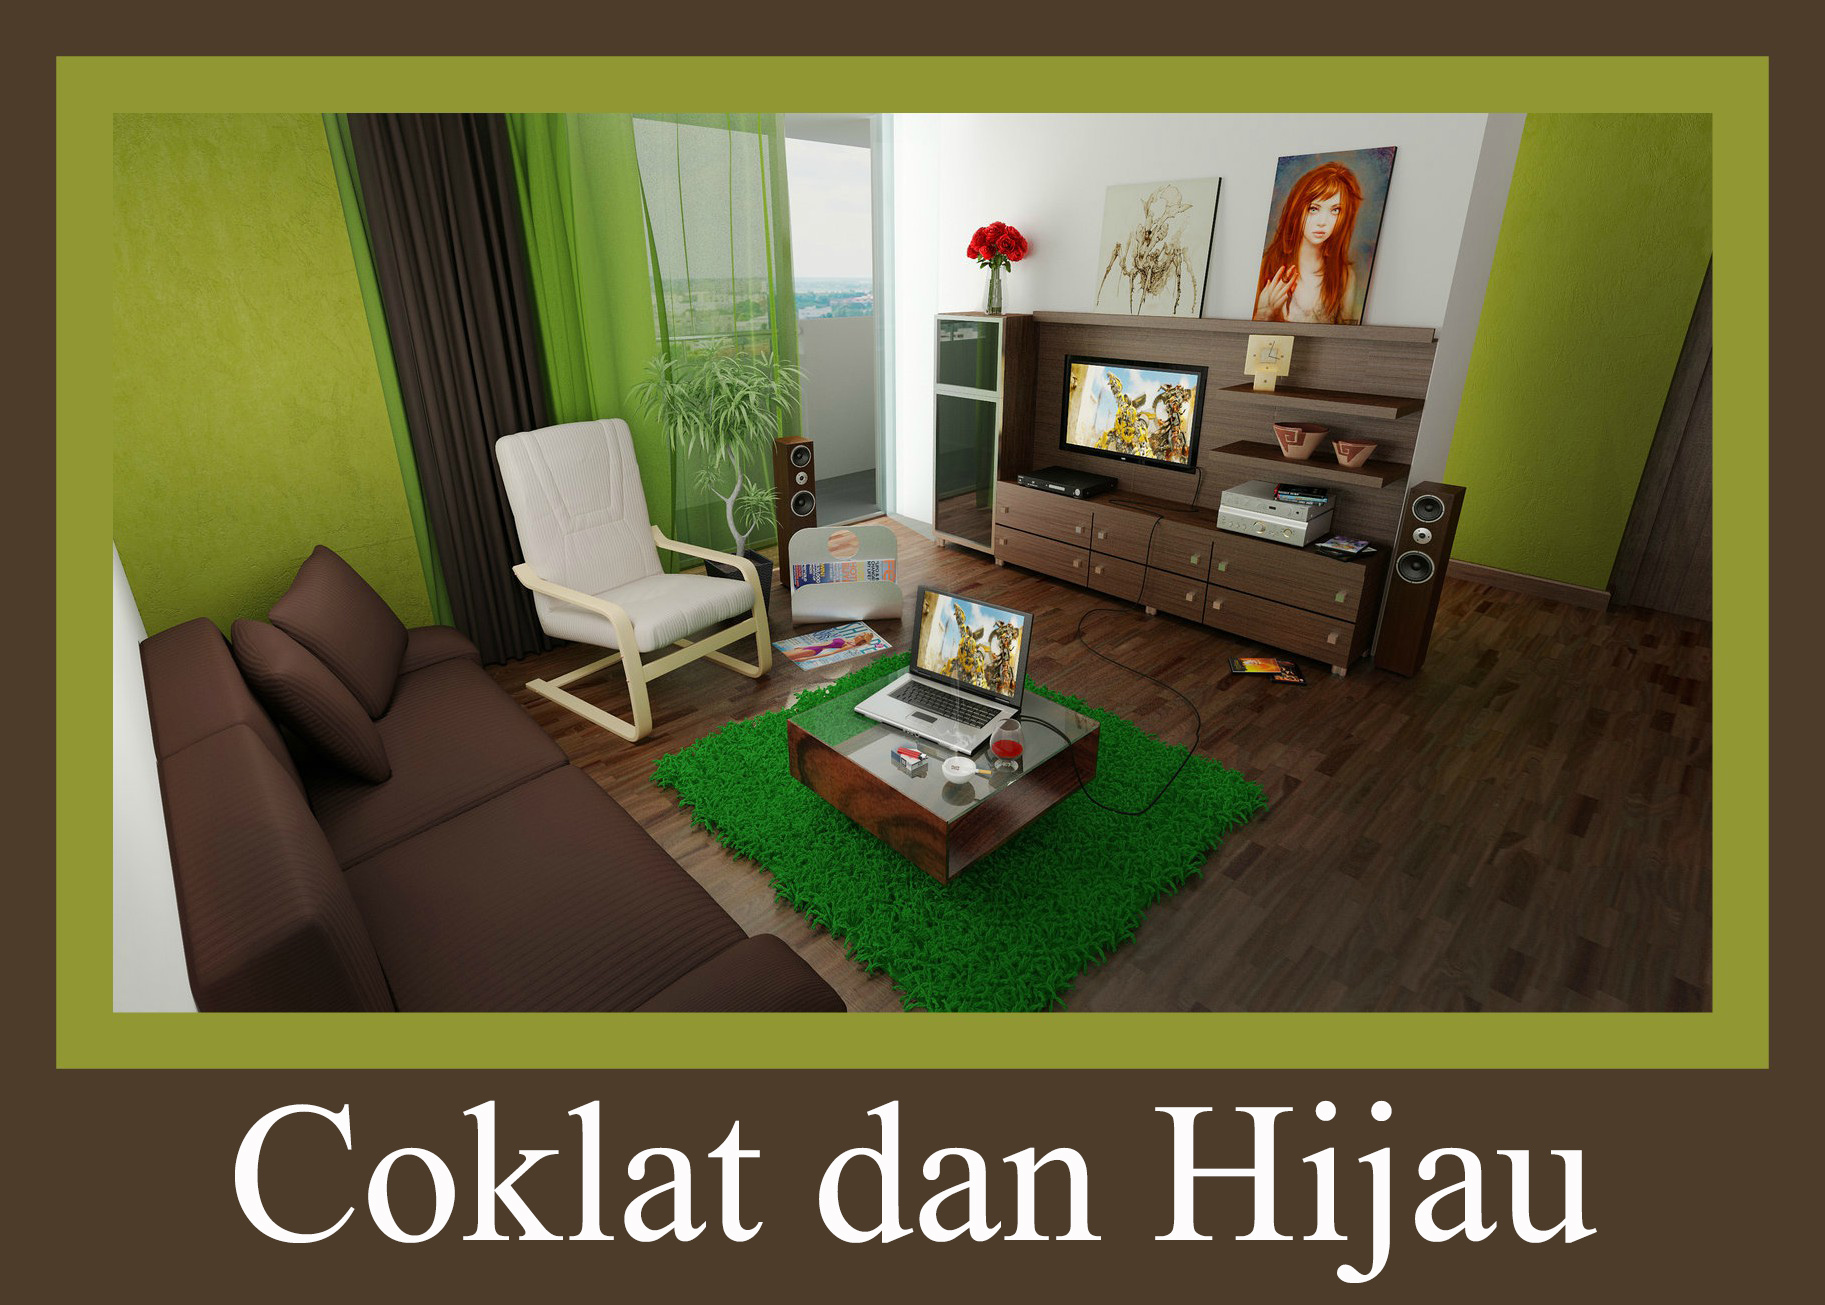 wallpaper warna coklat,living room,room,furniture,green,interior design